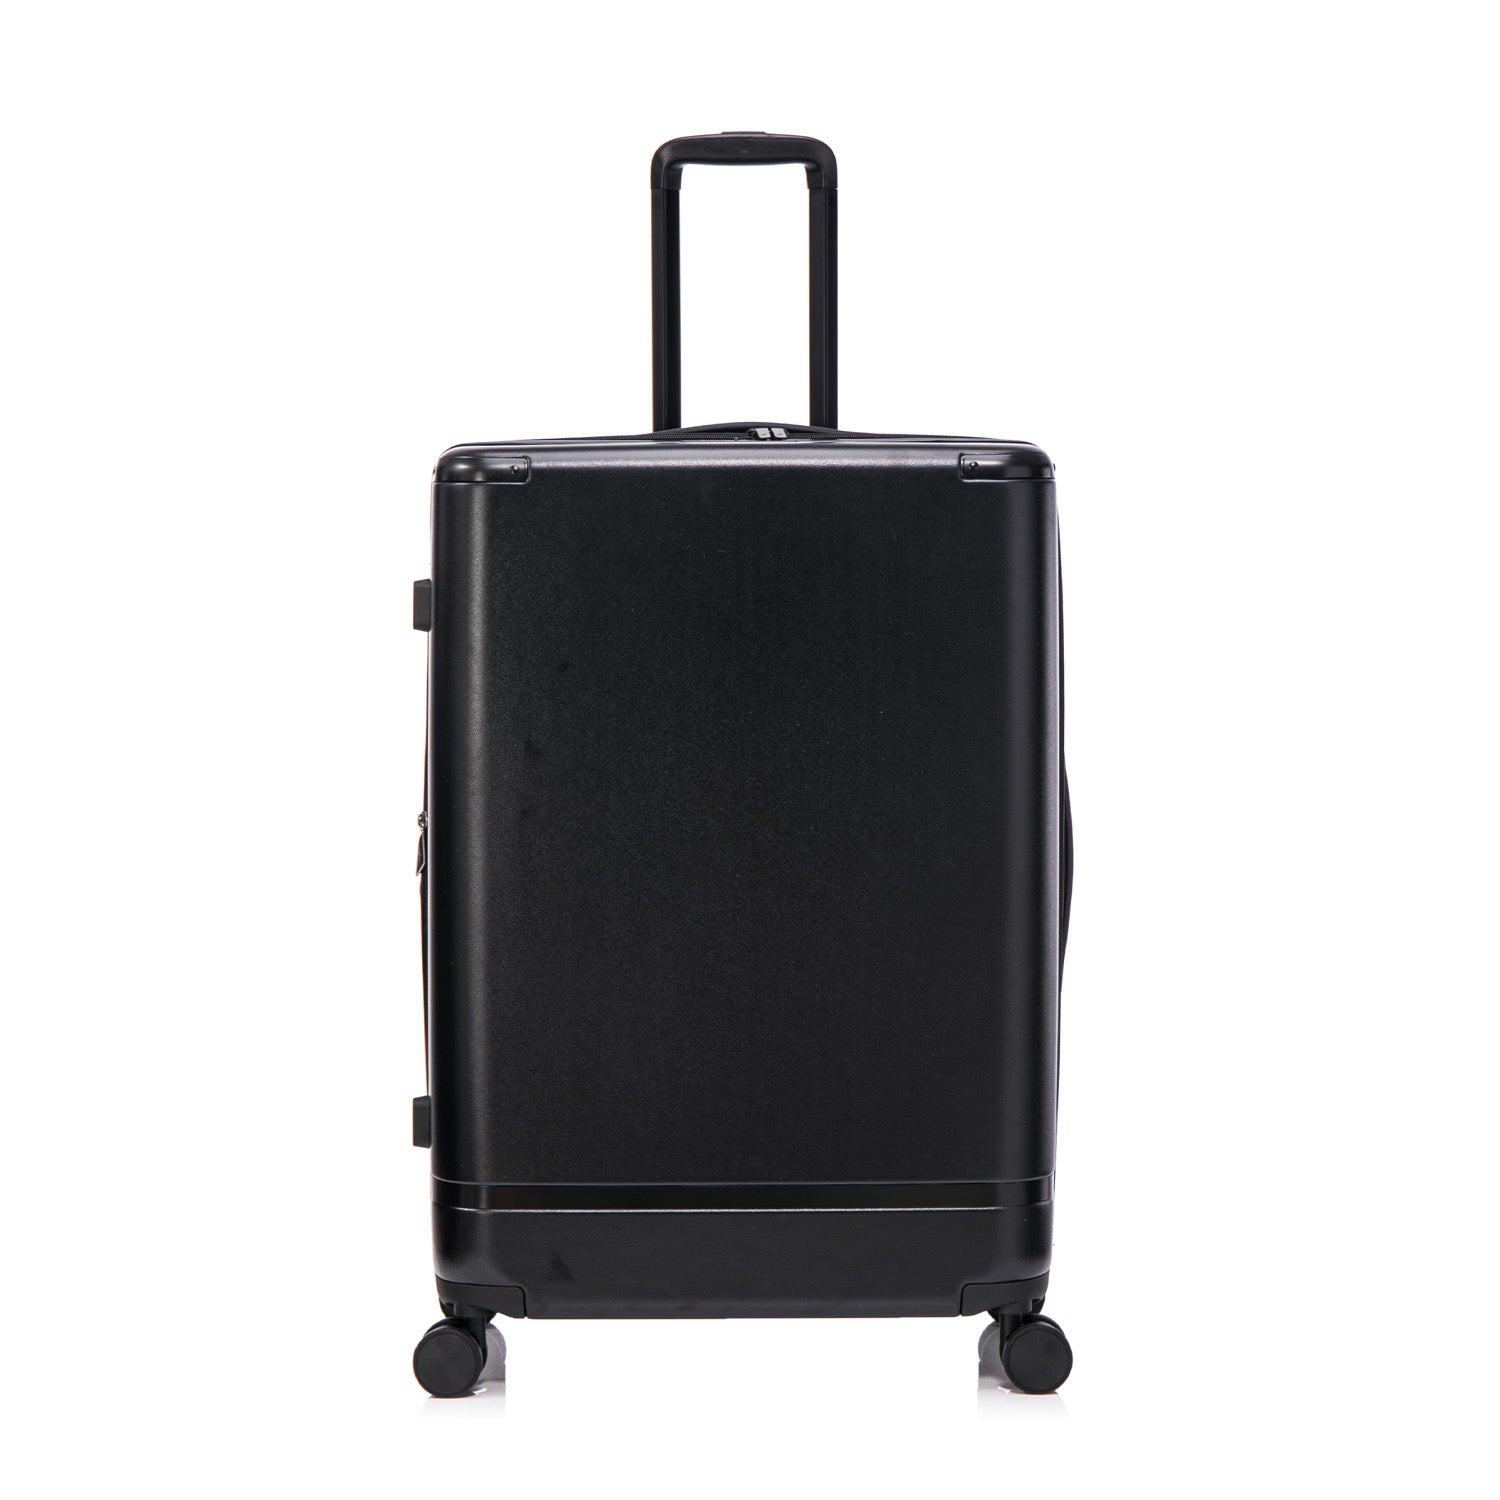 Qantas- QF250 ROME 76cm Large spinner suitcase - Black